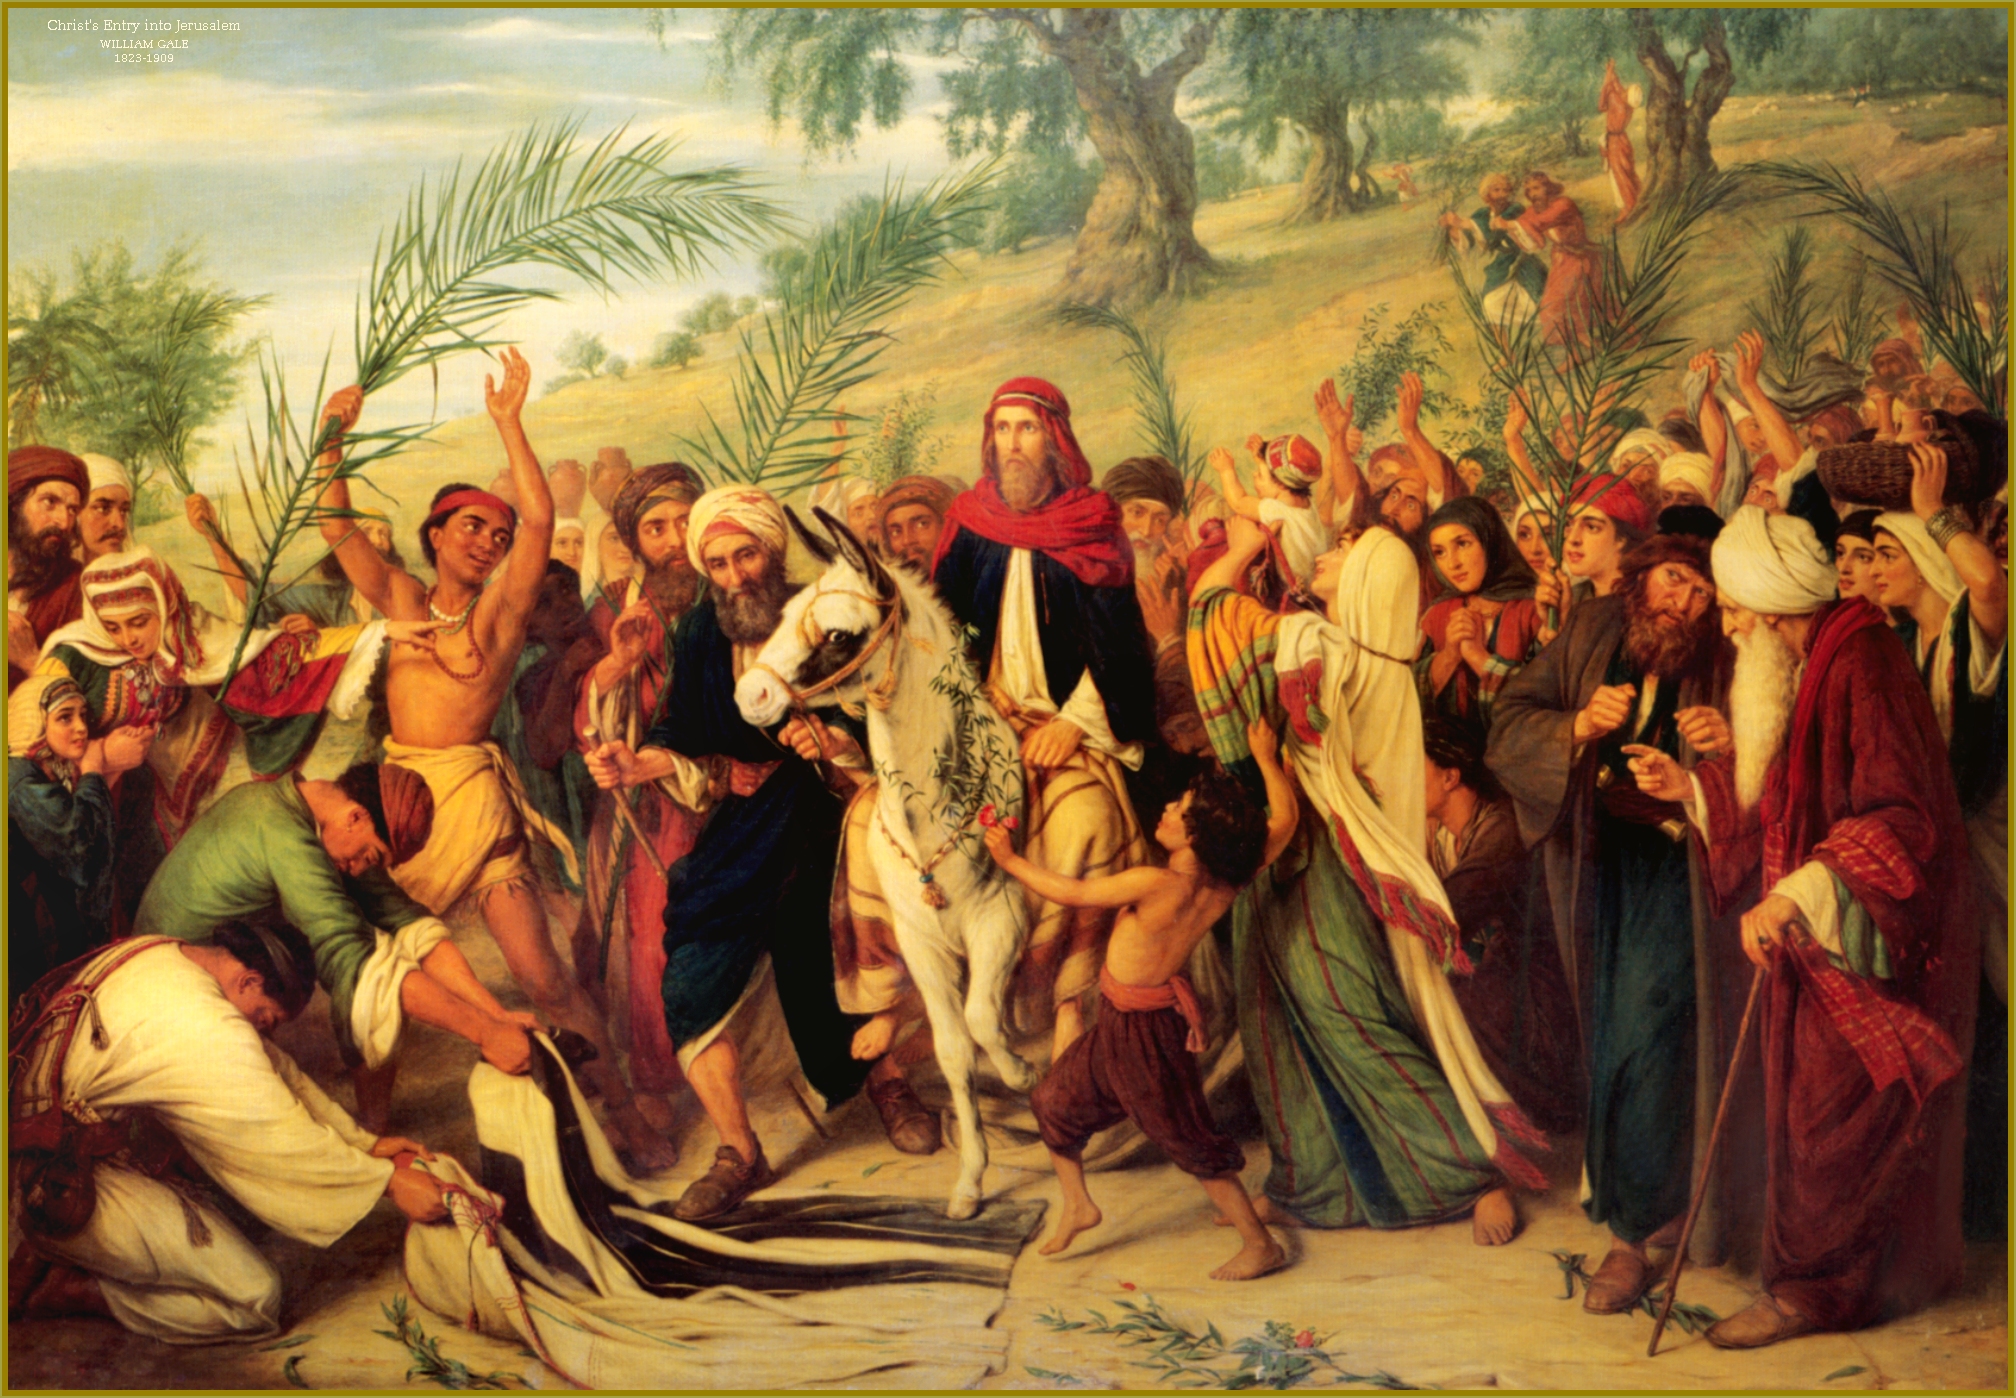 Christ's Entry Into Jerusalem , HD Wallpaper & Backgrounds